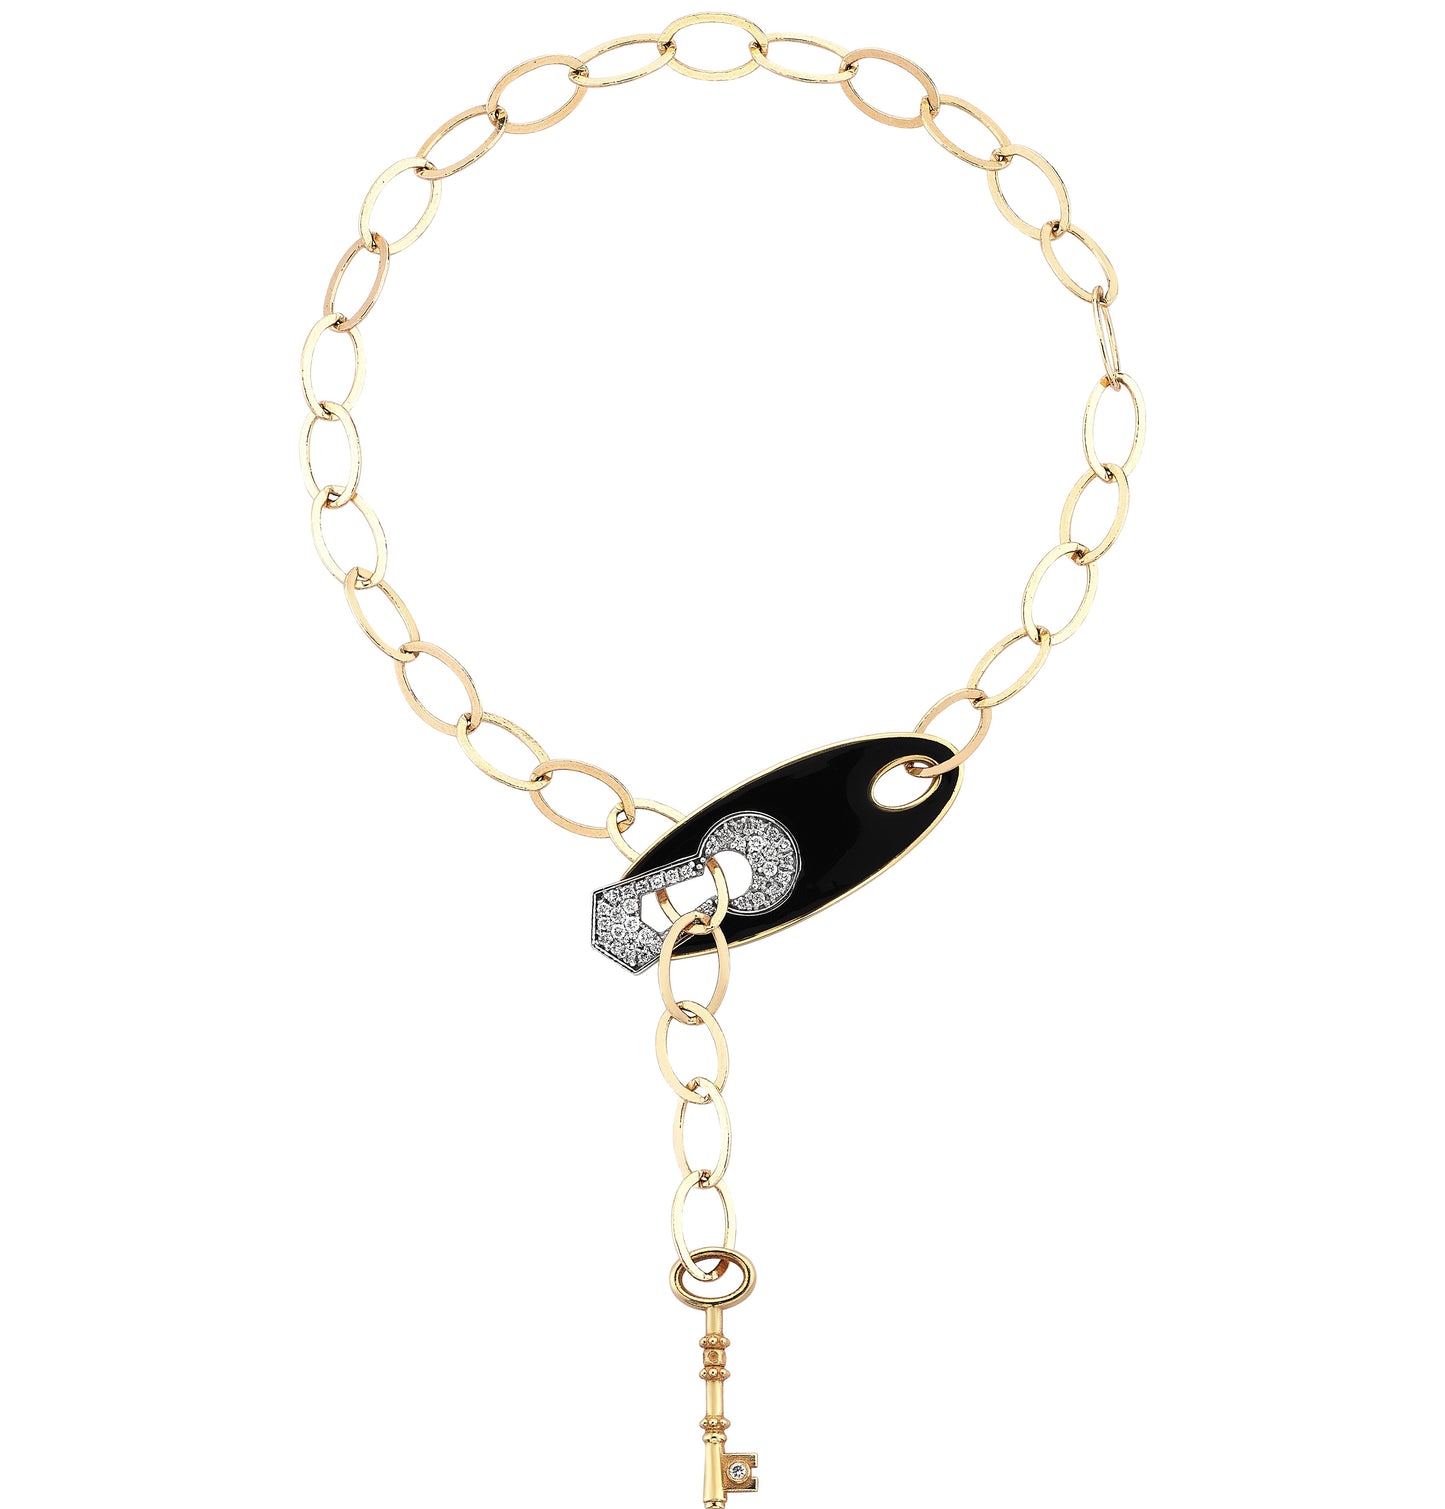 Keyhole Bracelet With Key & Black Enameled